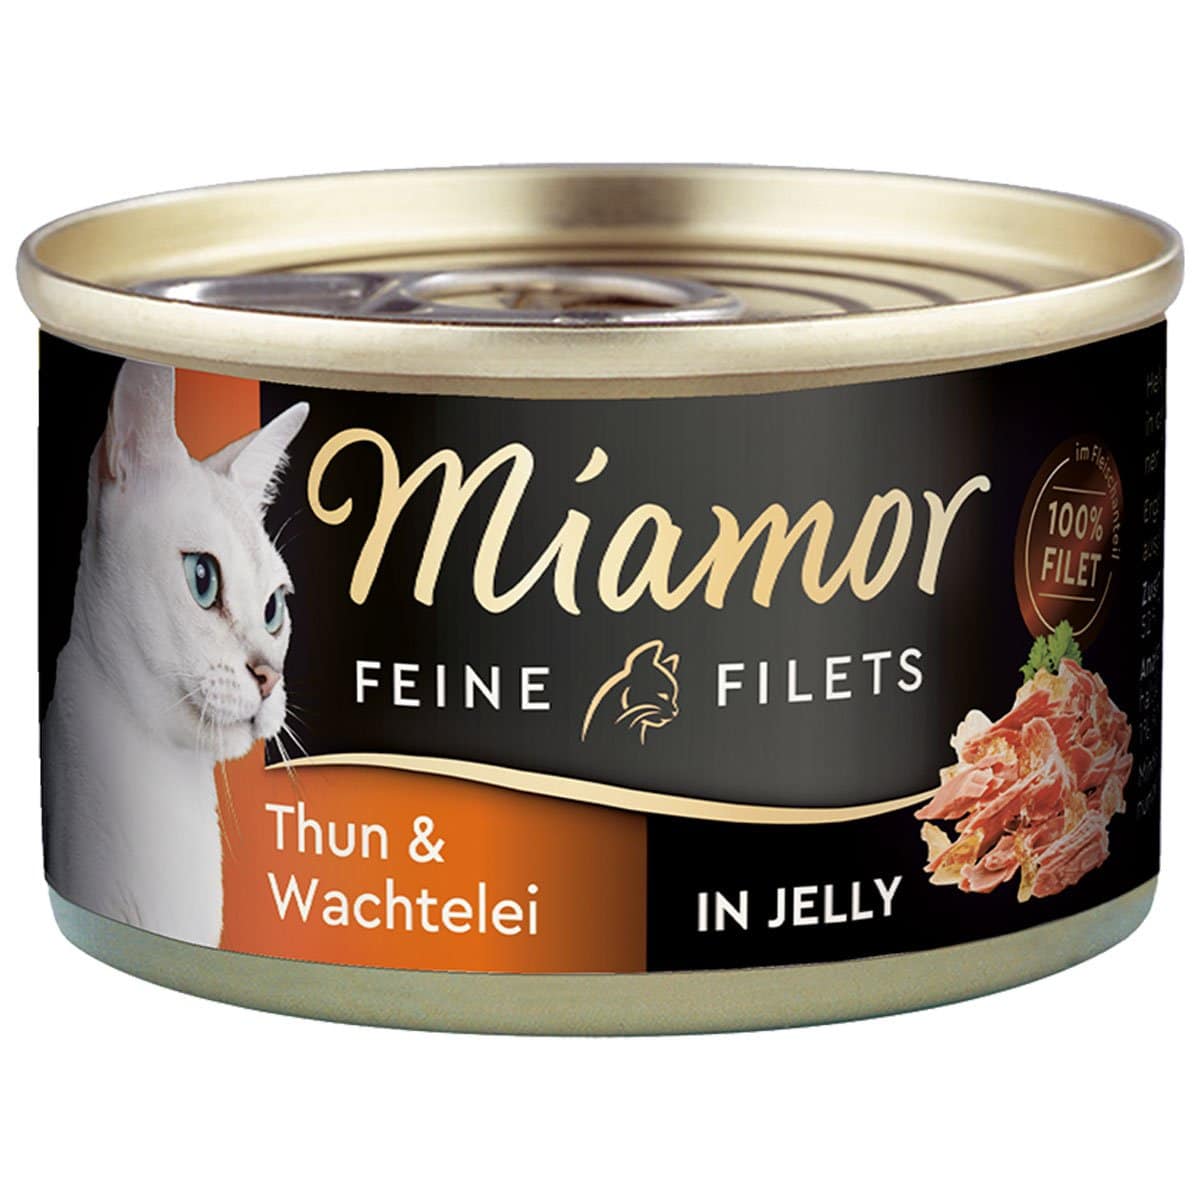 Miamor Feine Filets in Jelly Thunfisch und Wachtelei 100g 24x100g